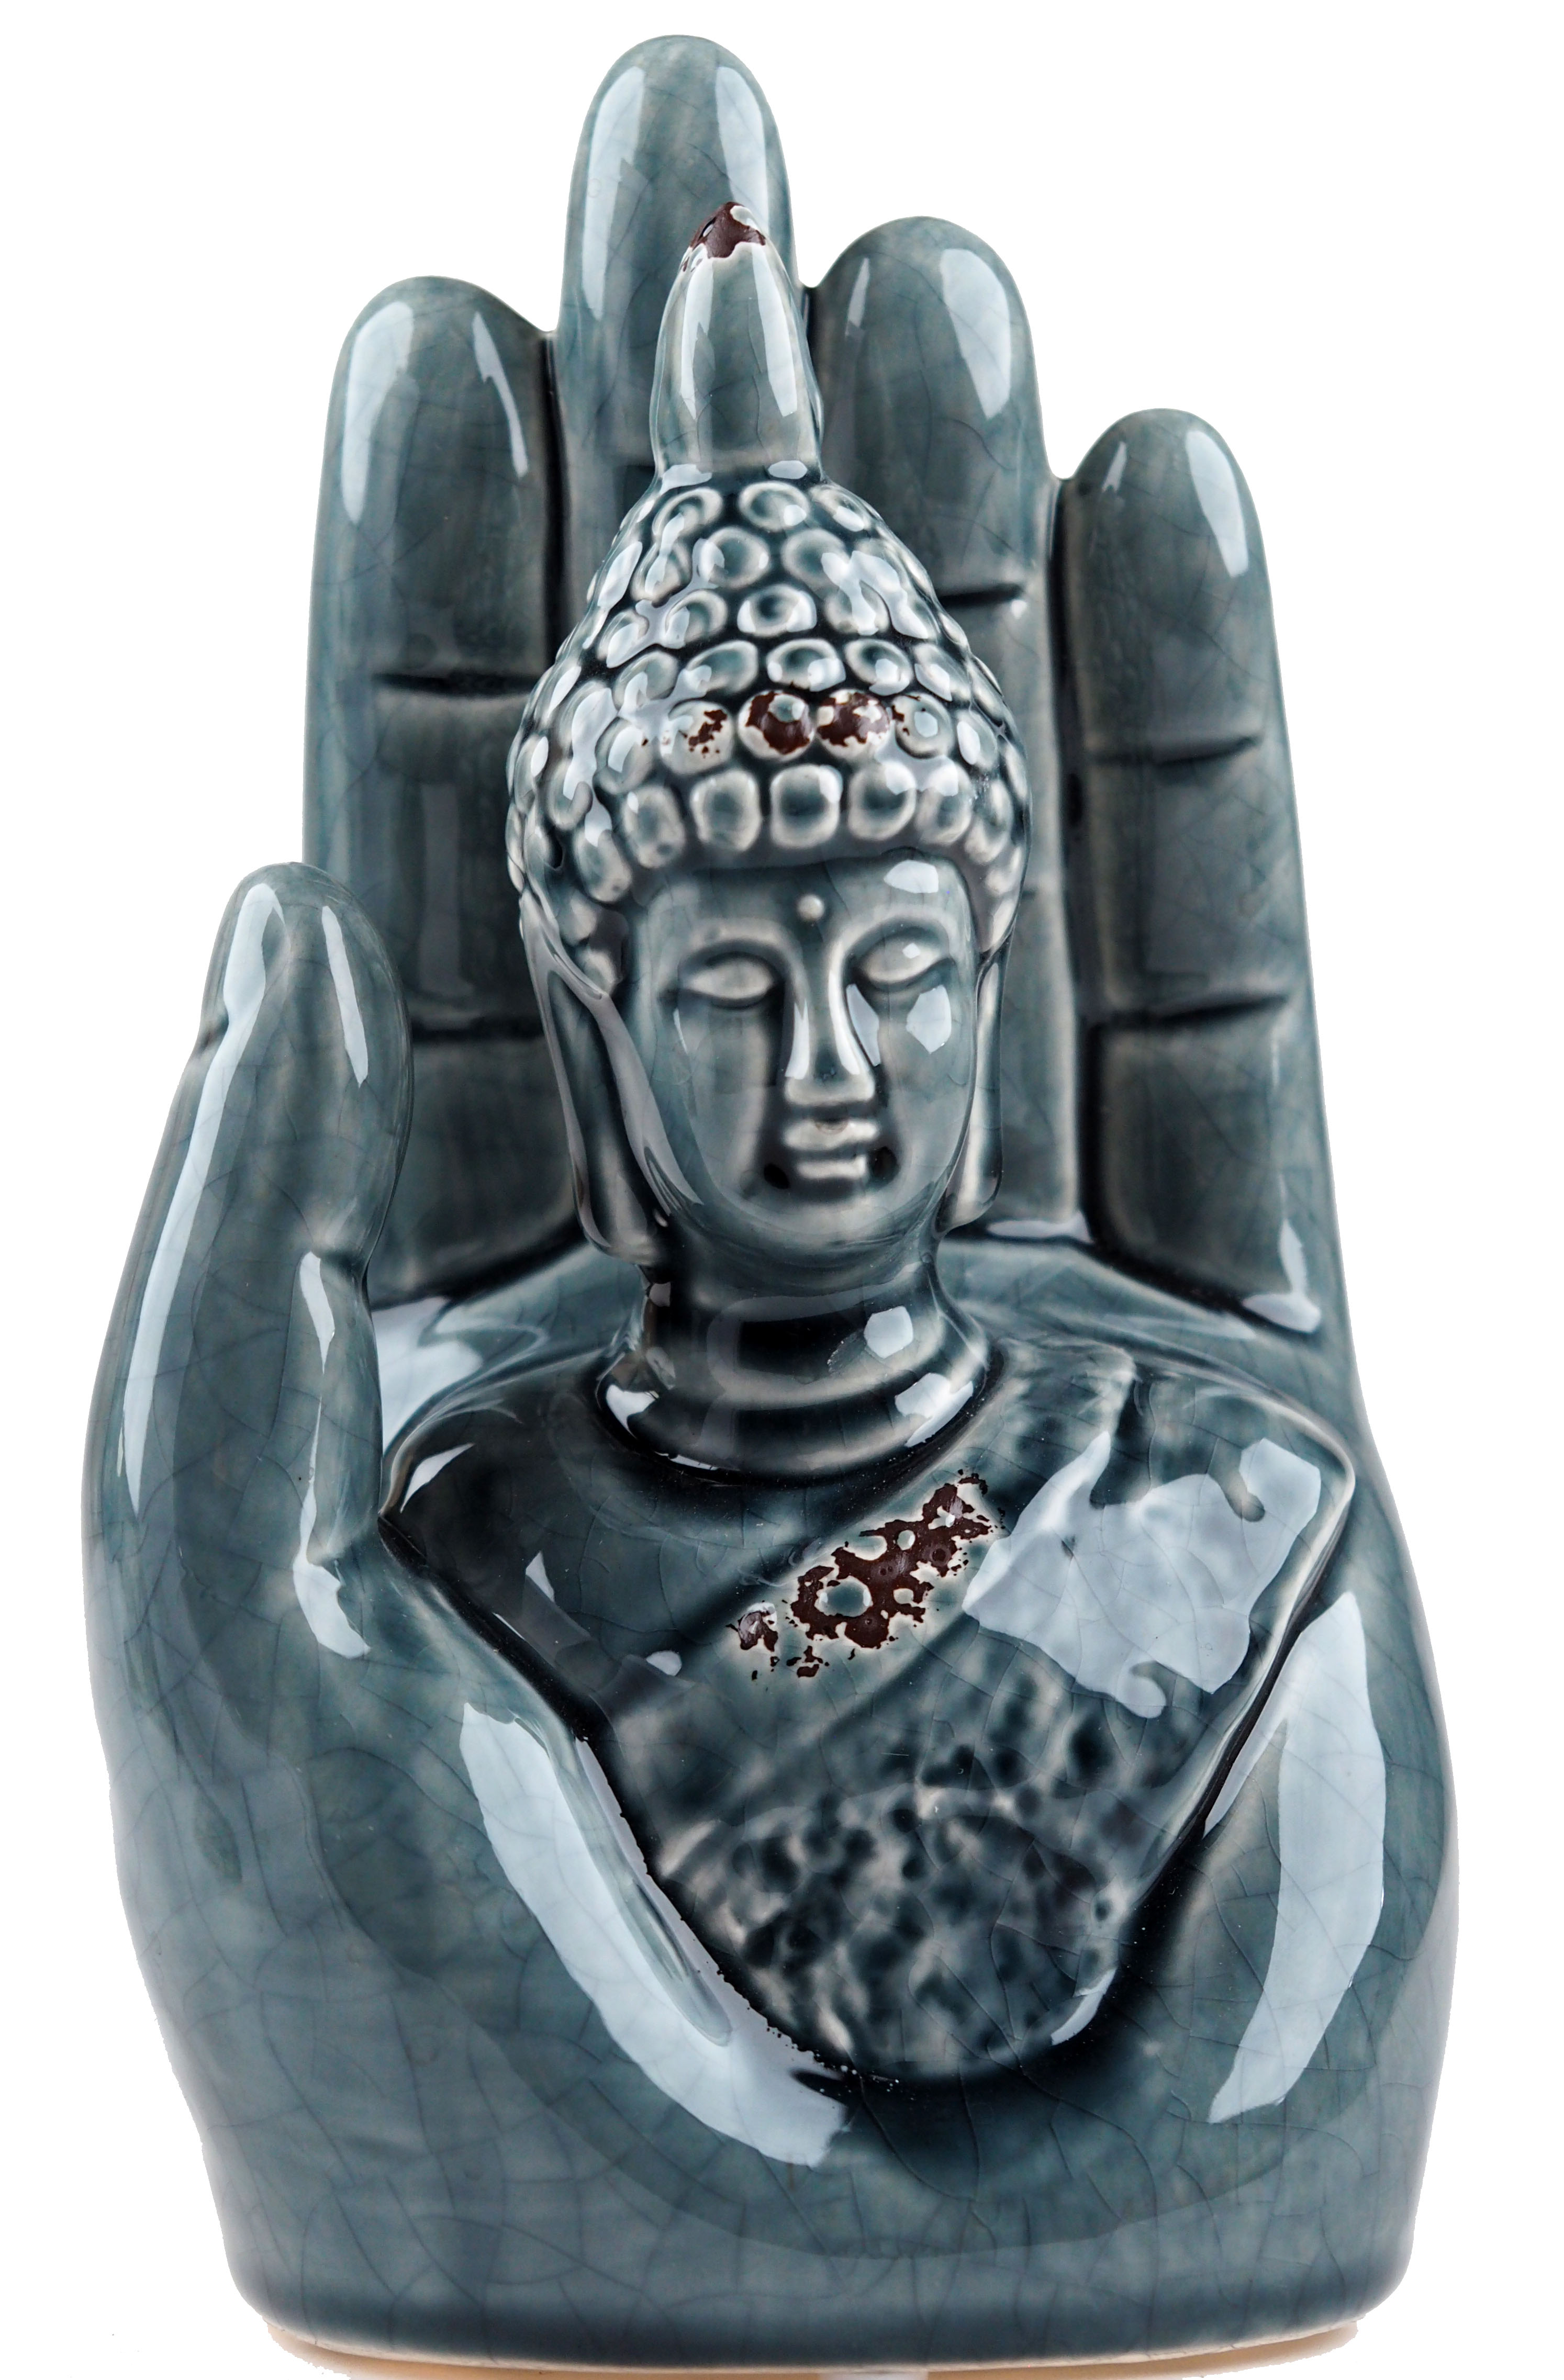 Thai Buddha 18cm Hand Ornament - Distressed Grey Blue Glaze